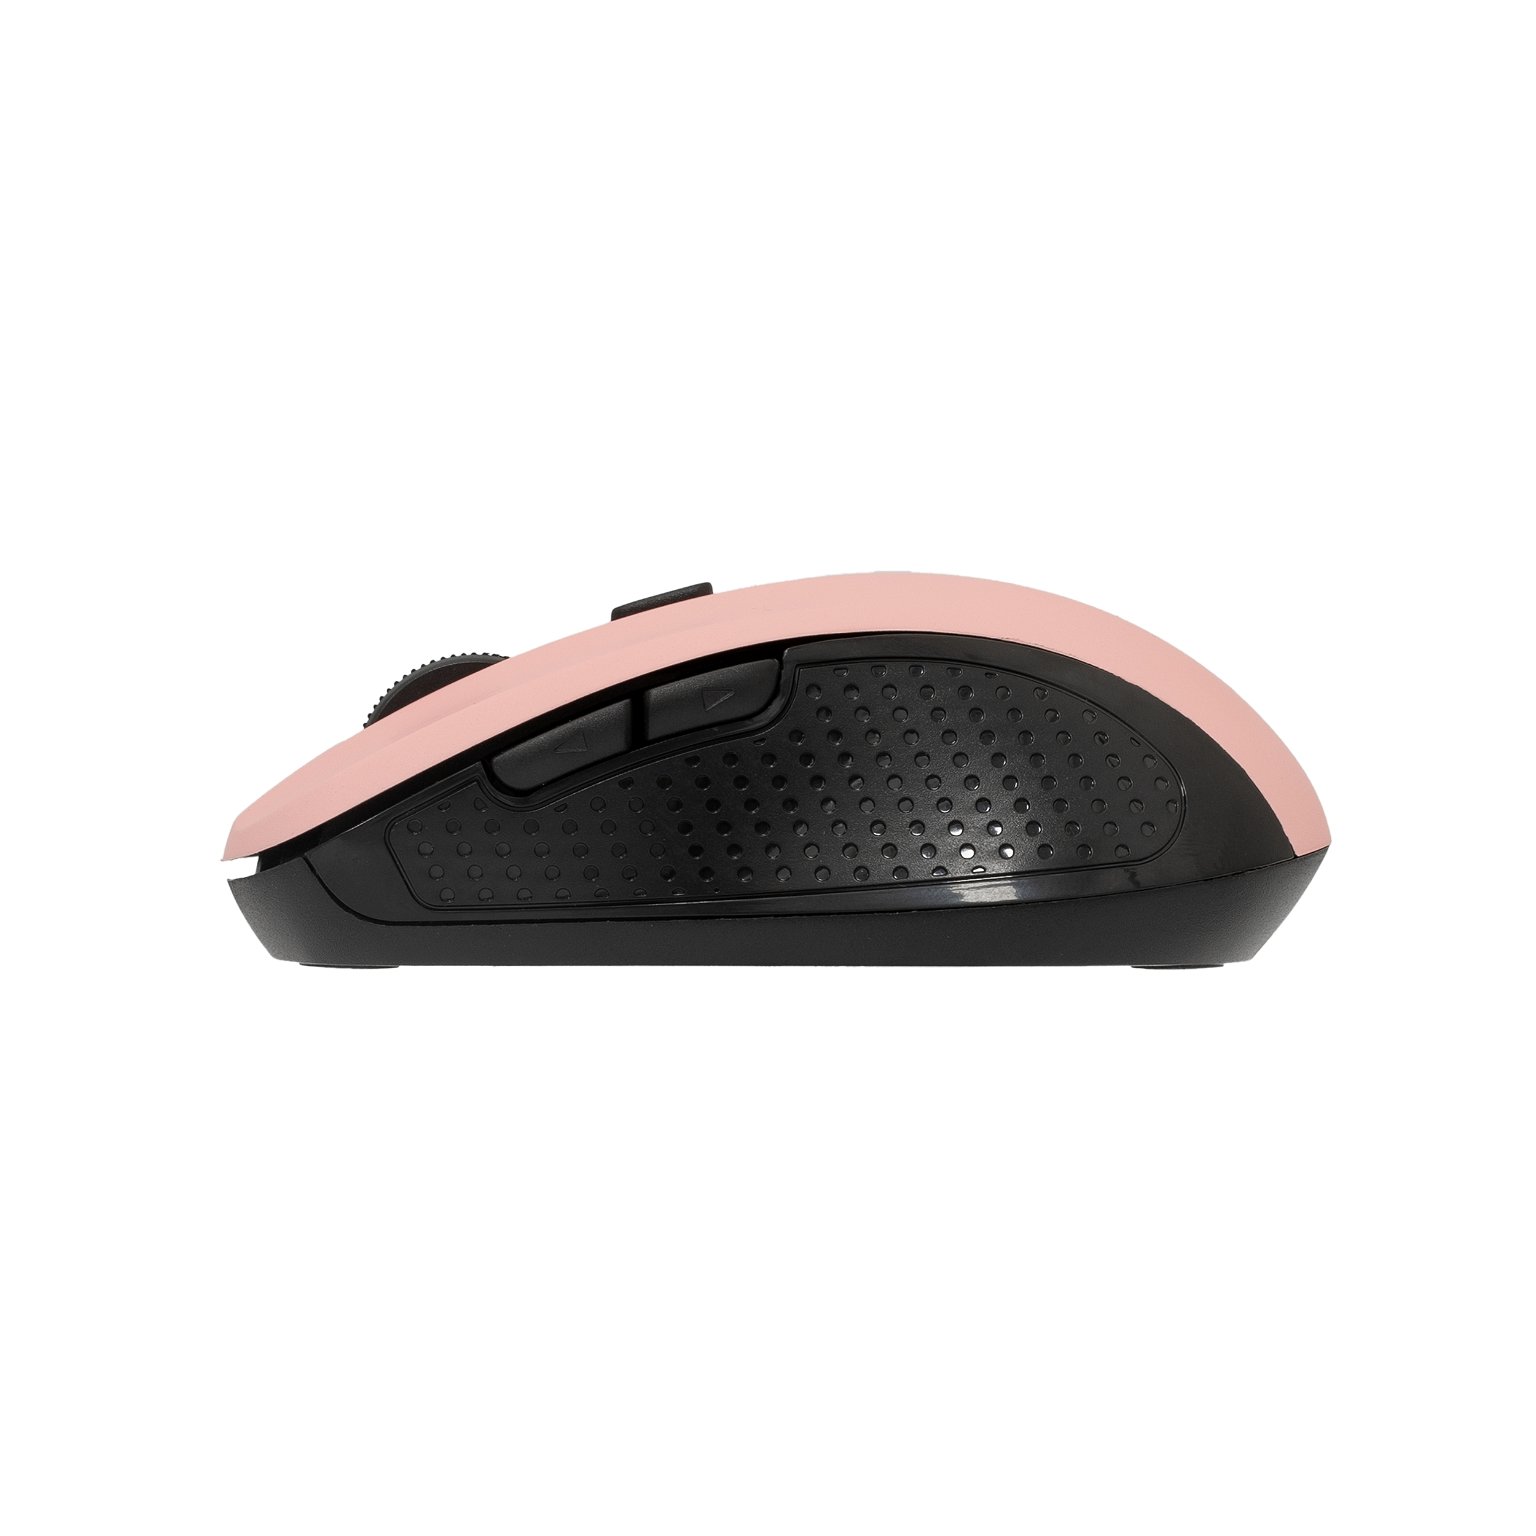 Kompiuterio pelė Sbox WM-993, rožinė - 4